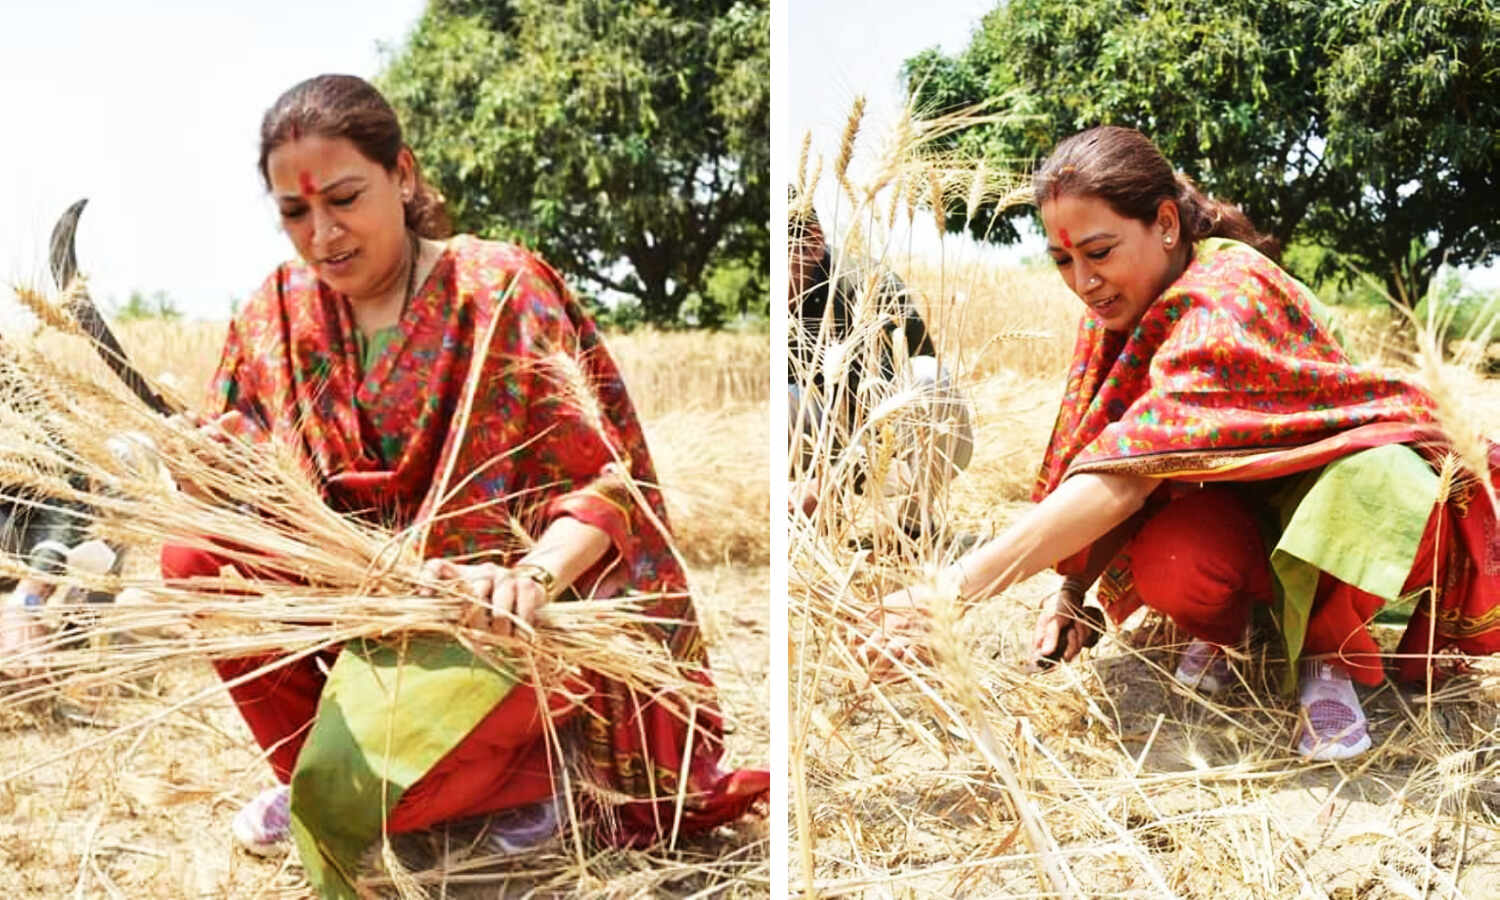 Uttarakhand Cabinet Minister : चिलचिलाती धूप में महिलाओं के साथ गेंहू काटने लगी यह कैबिनेट मंत्री, देखें तस्वीरें